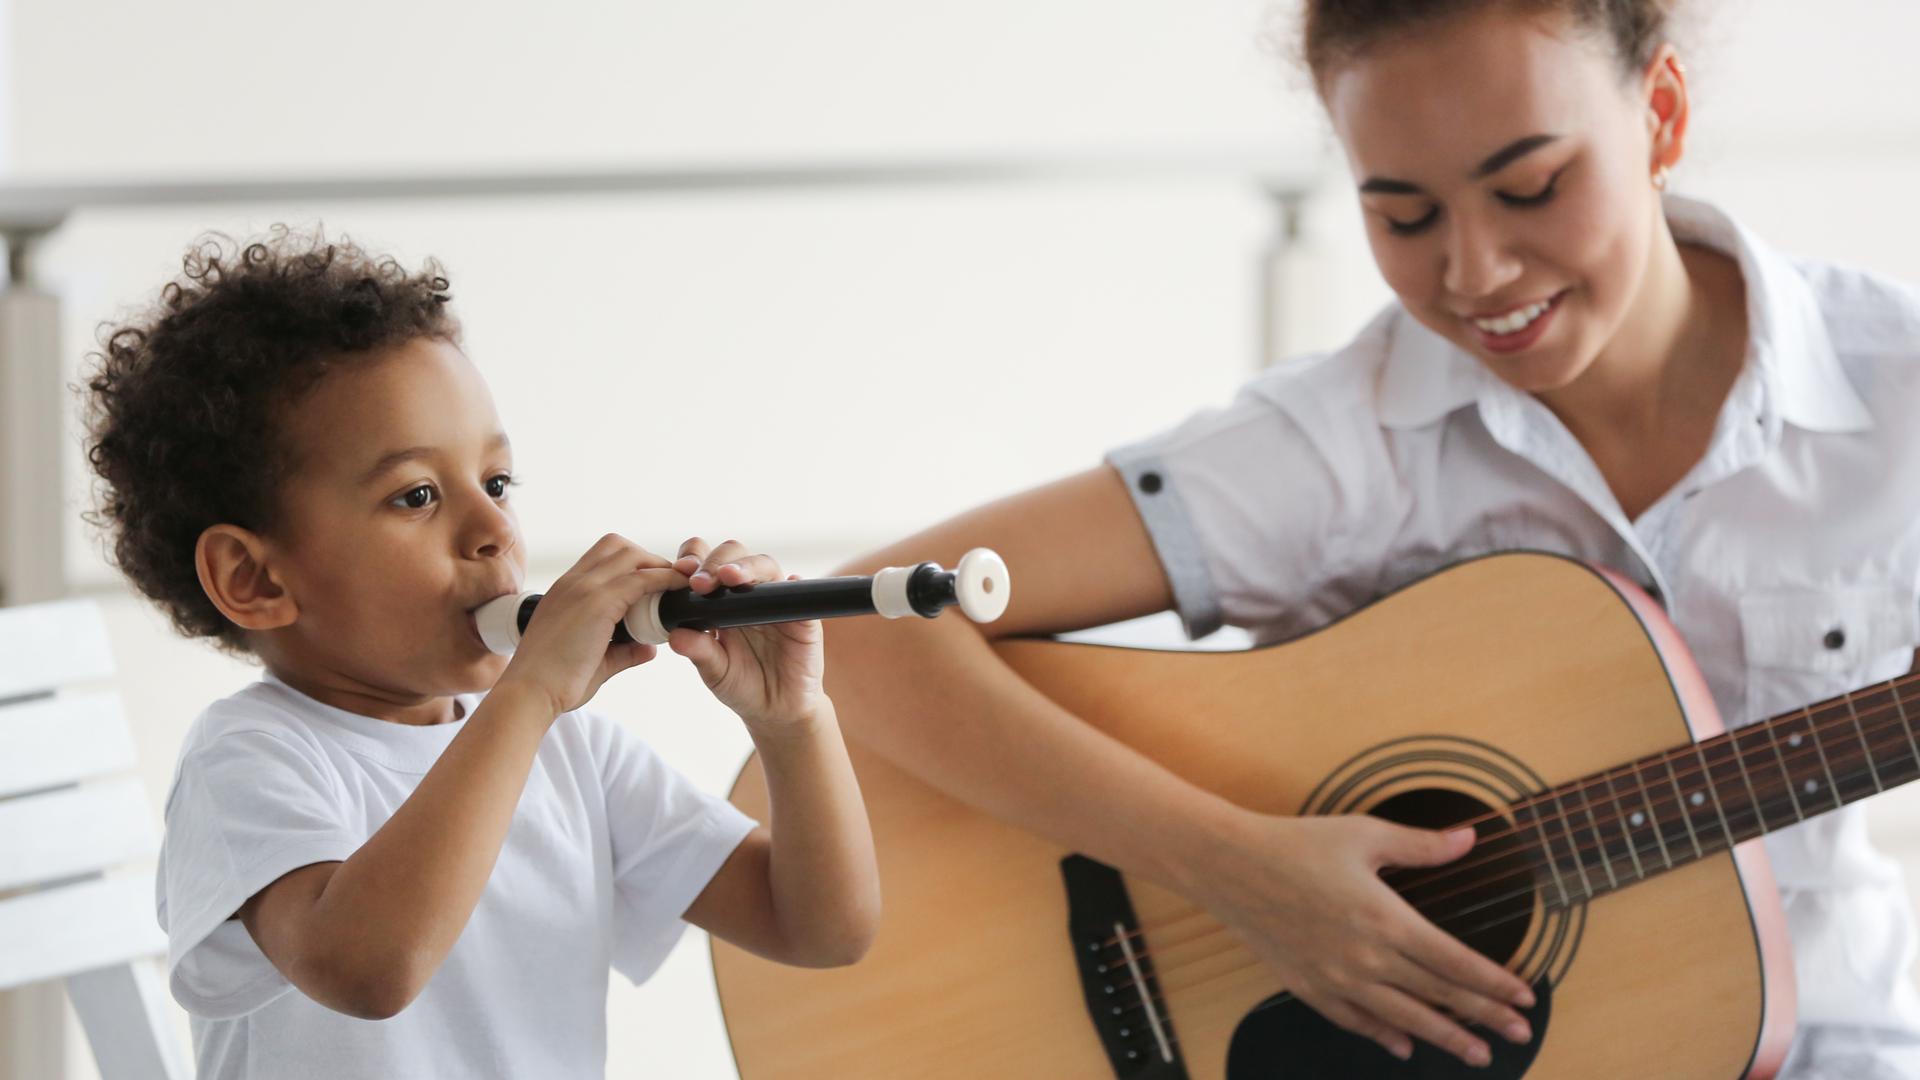 Junge an der Blockflöte und junges Mädchen mit Gitarre spielen zusammen